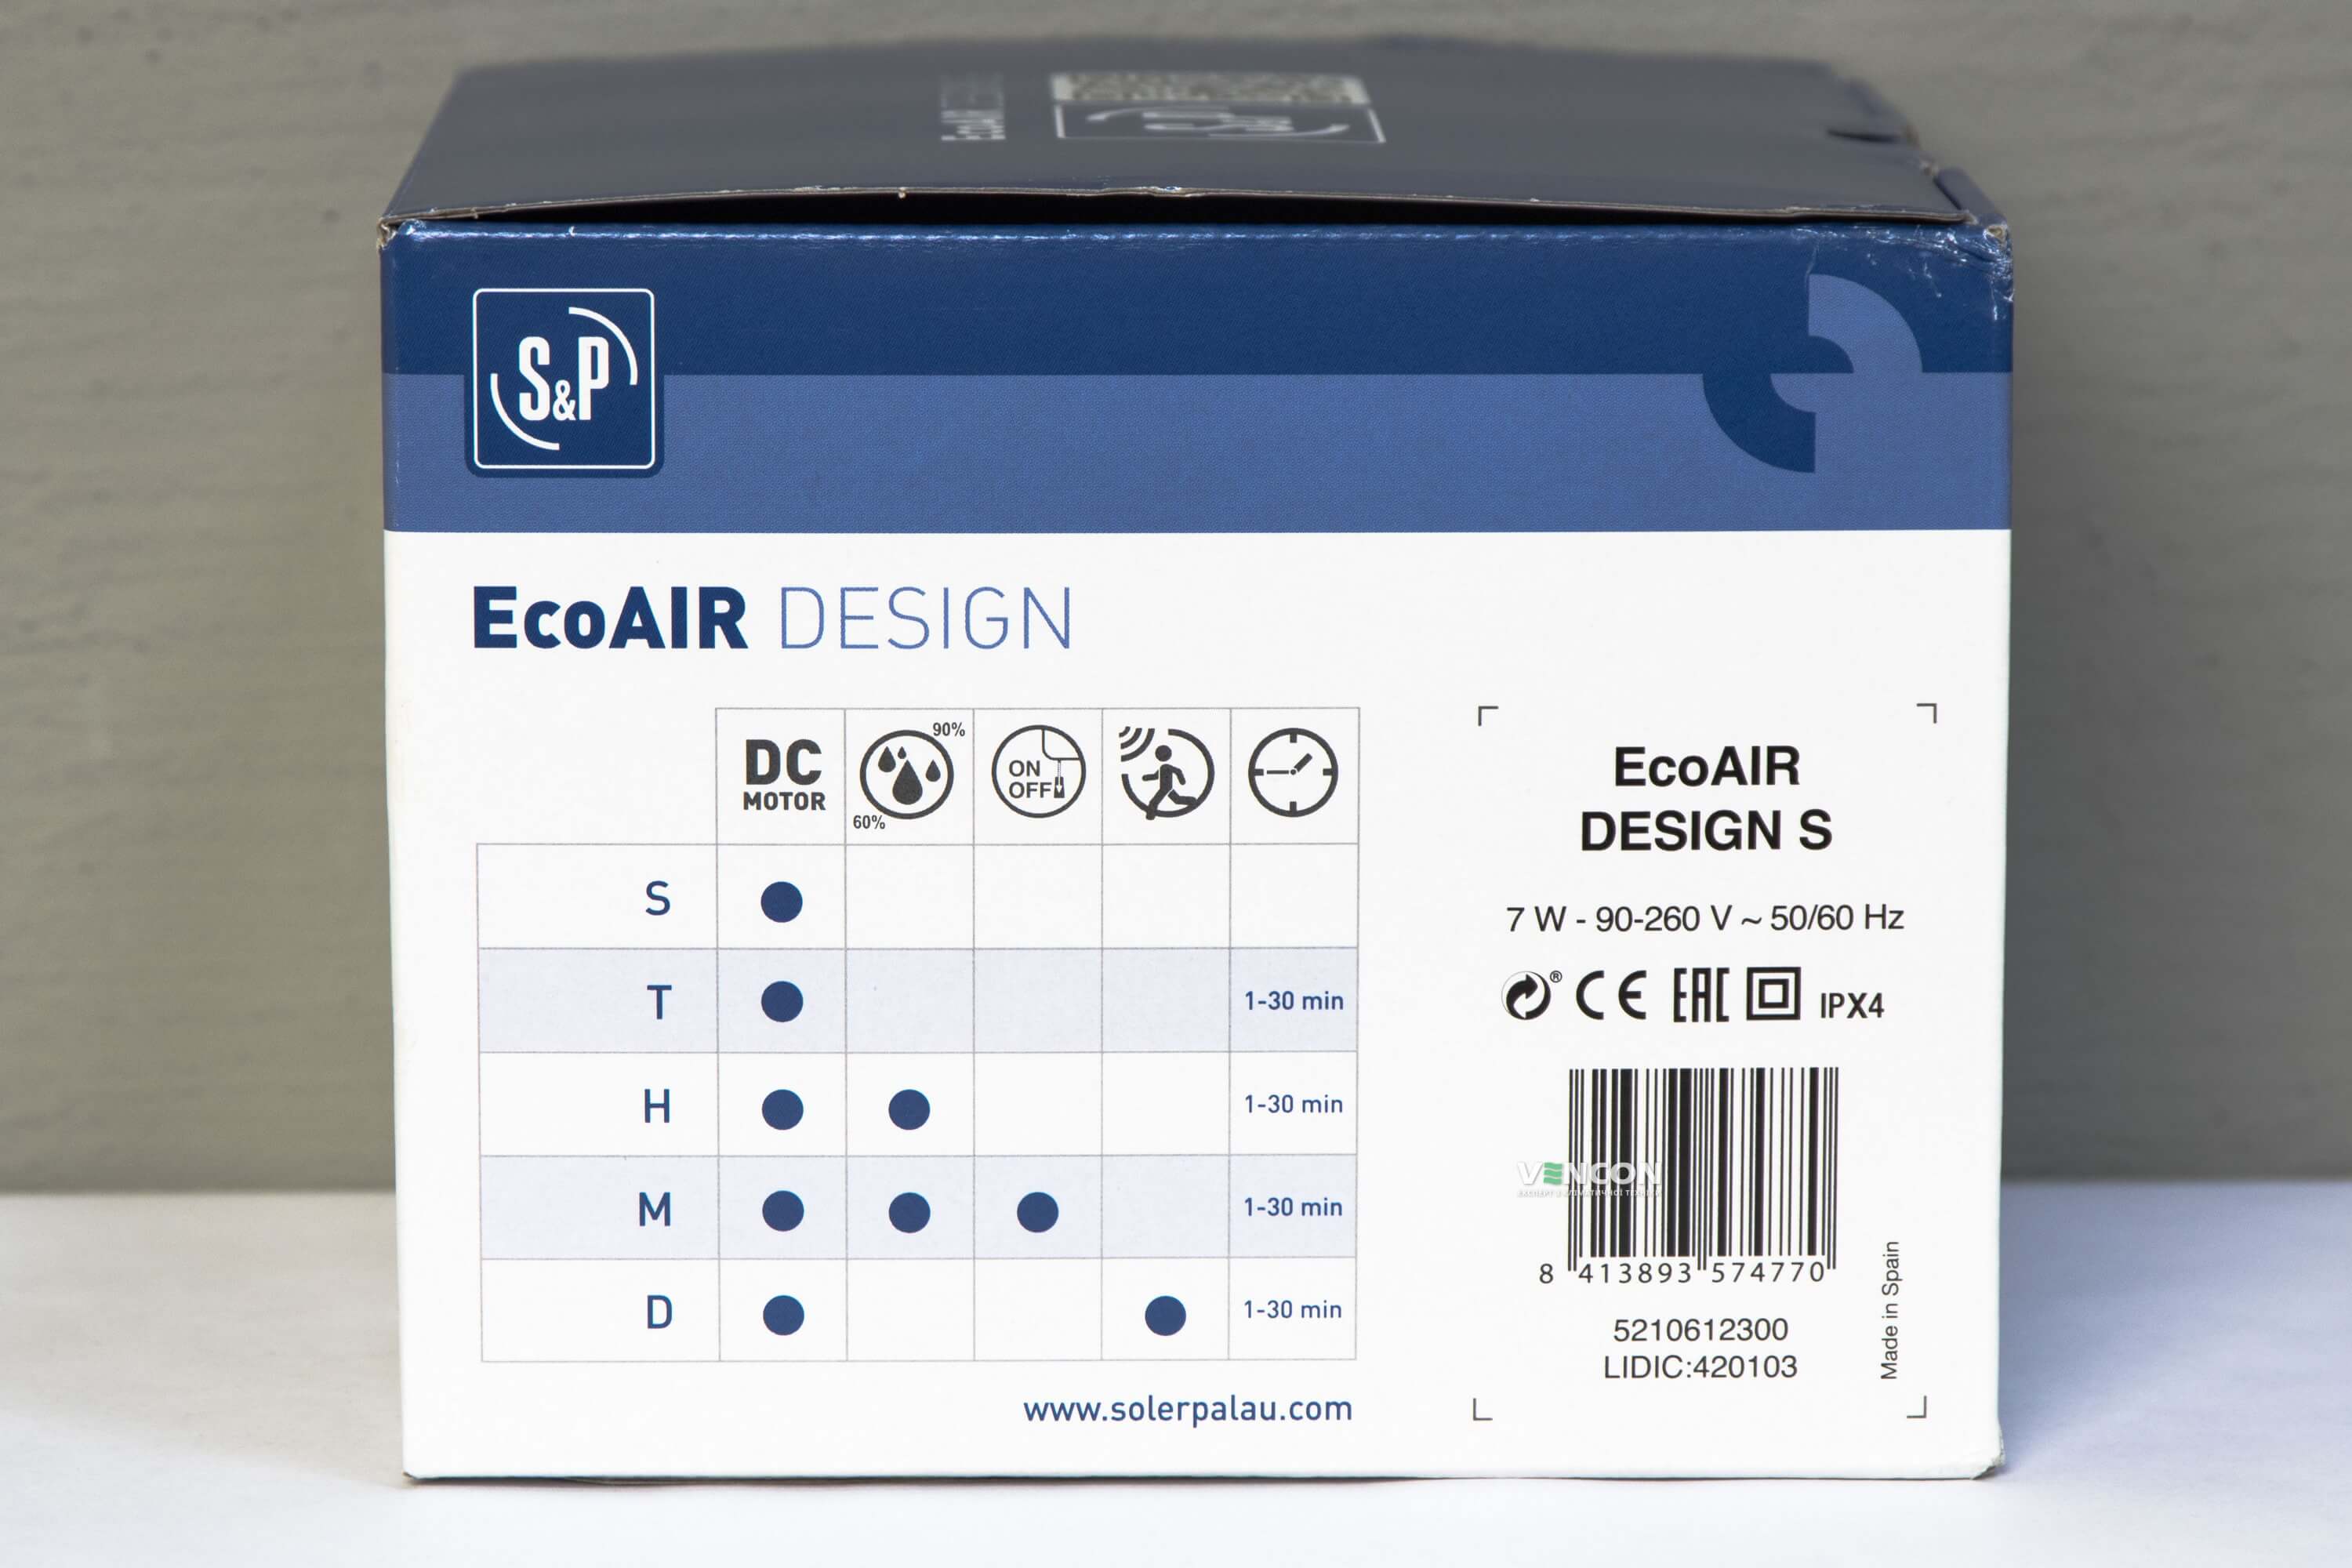 продаём Soler&Palau Ecoair Design S (5210612300) в Украине - фото 4